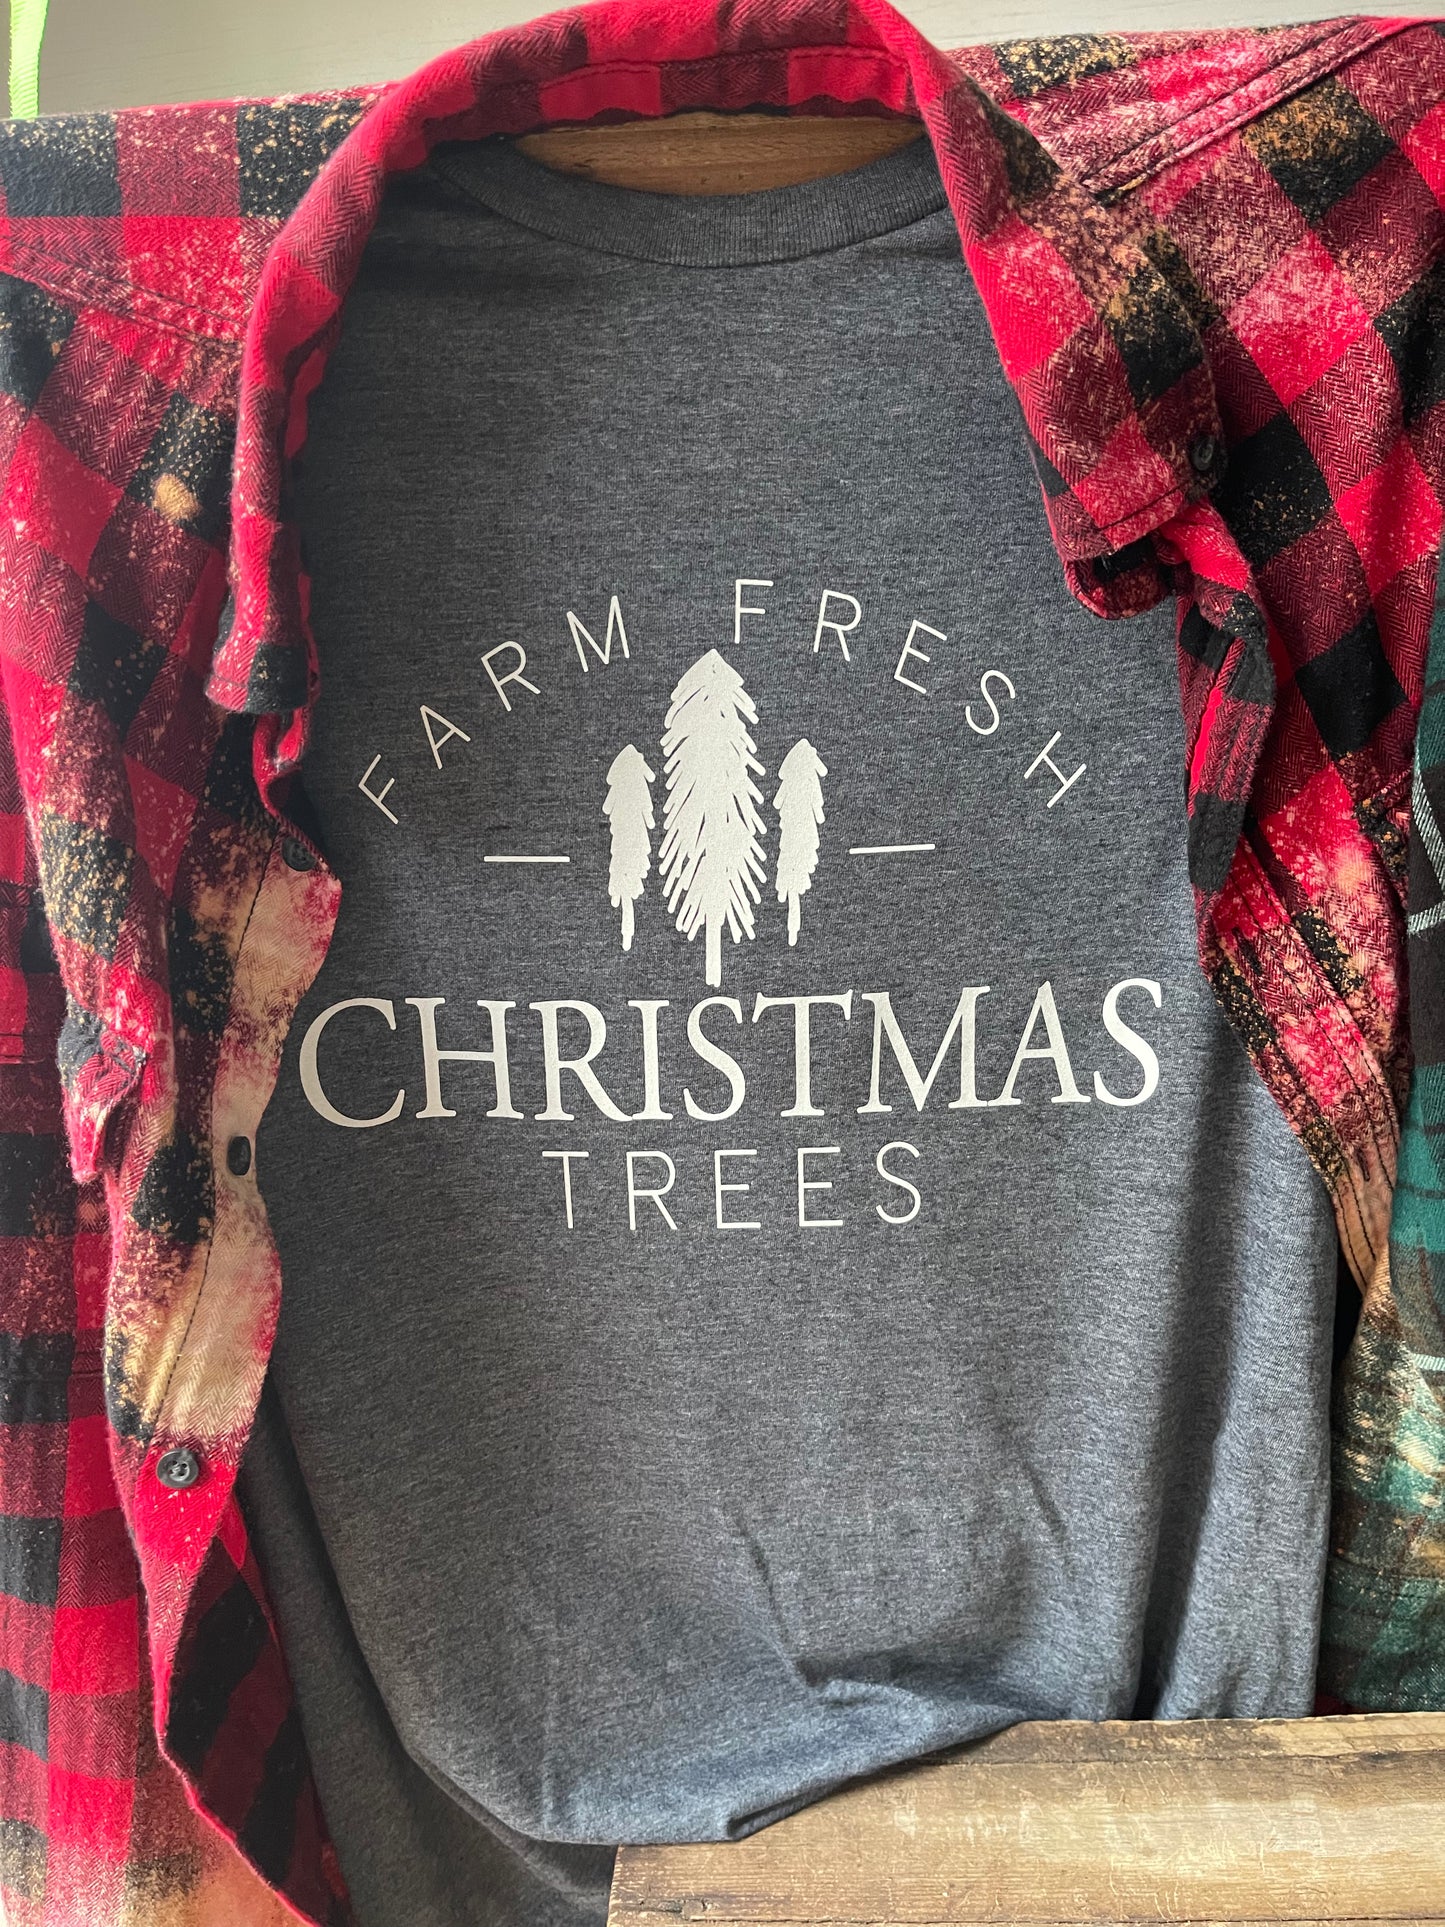 FARM FRESH CHRISTMAS TREES